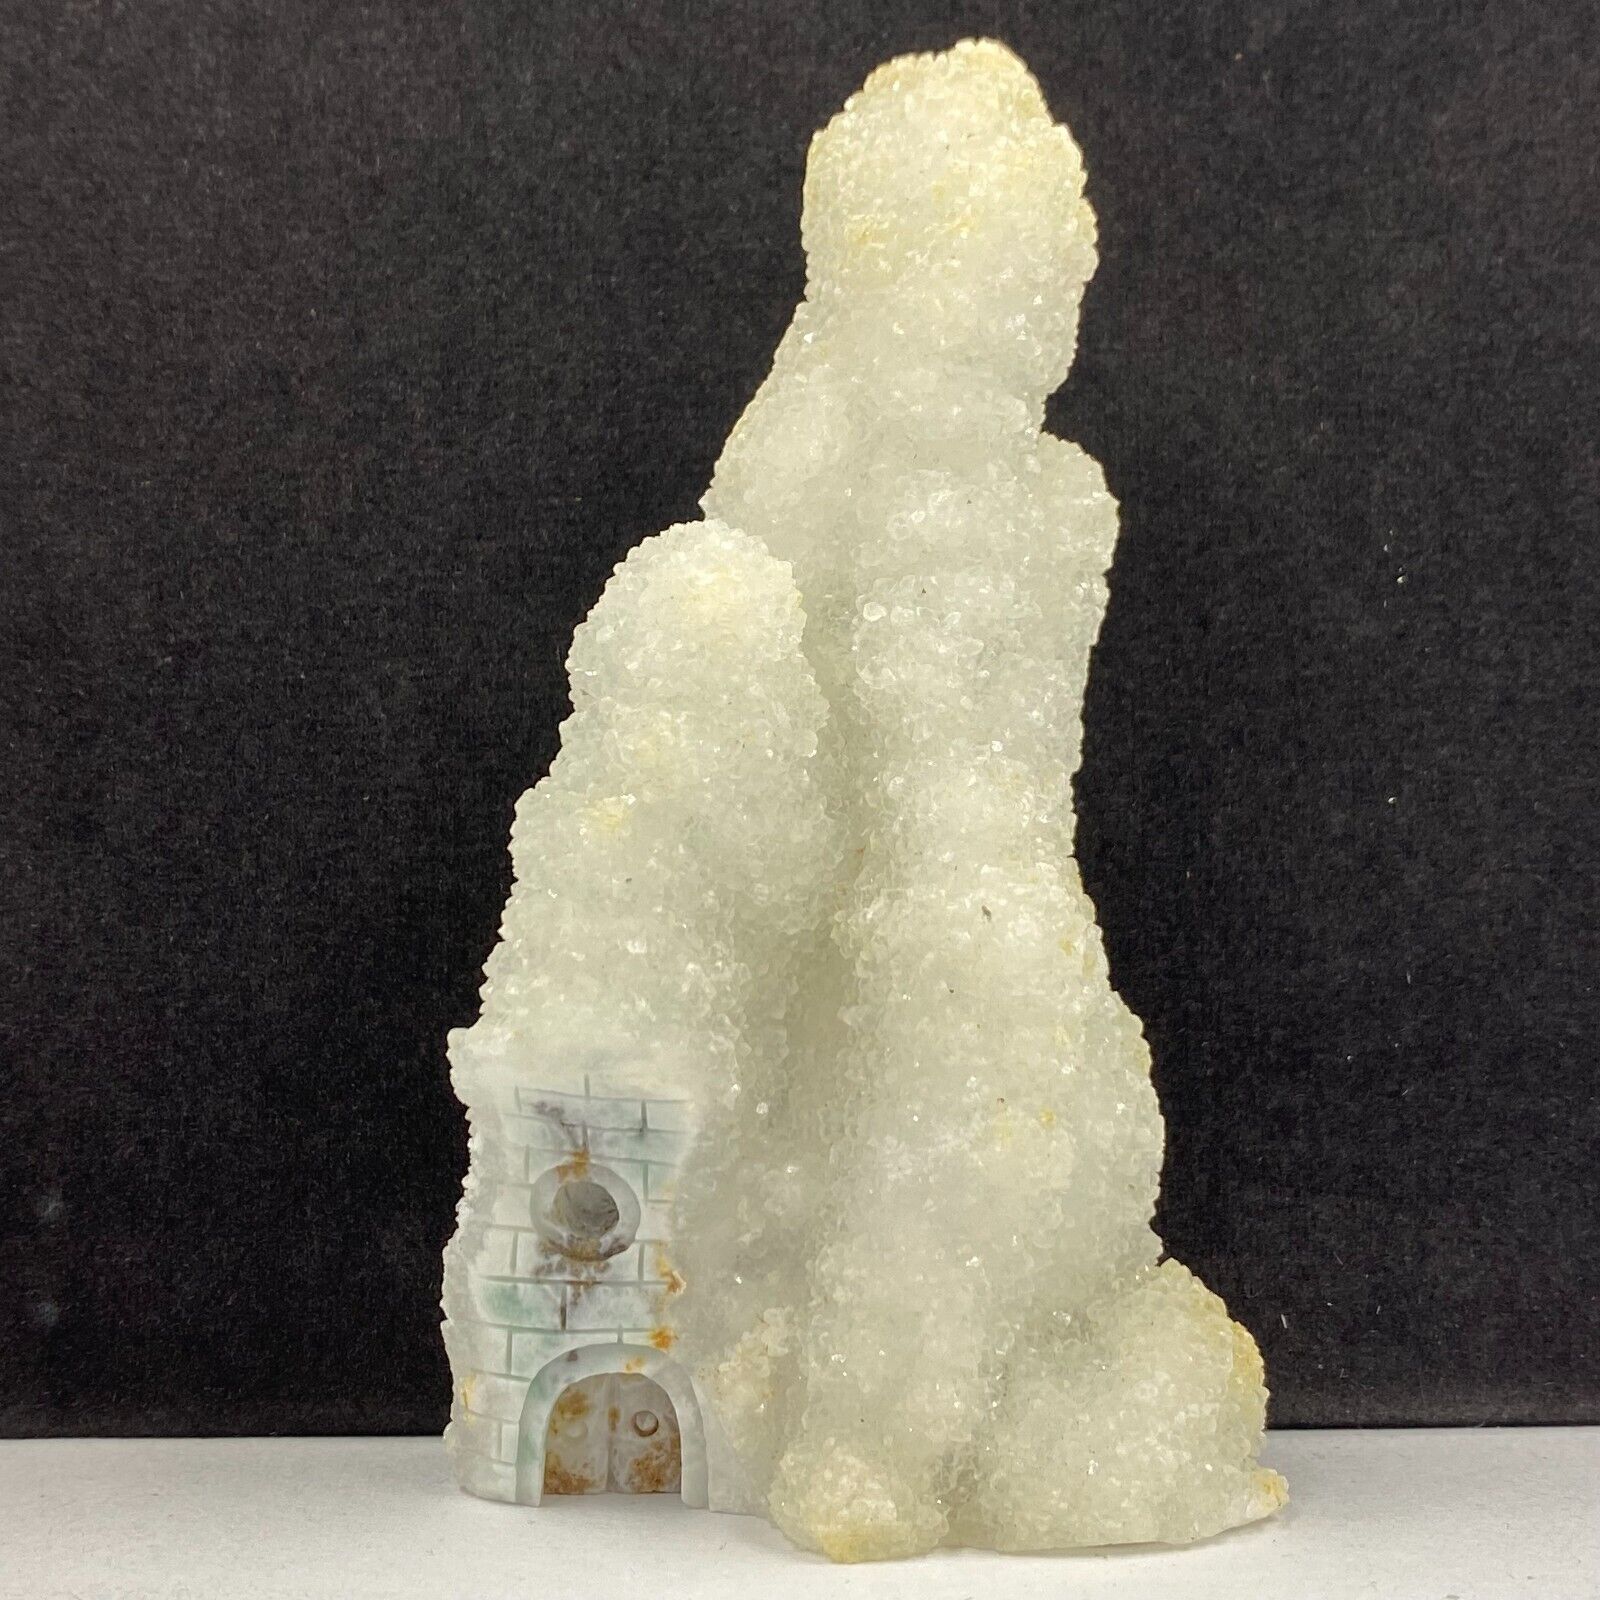 263g Natural quartz crystal cluster mineral specimen, hand-carved the house gift